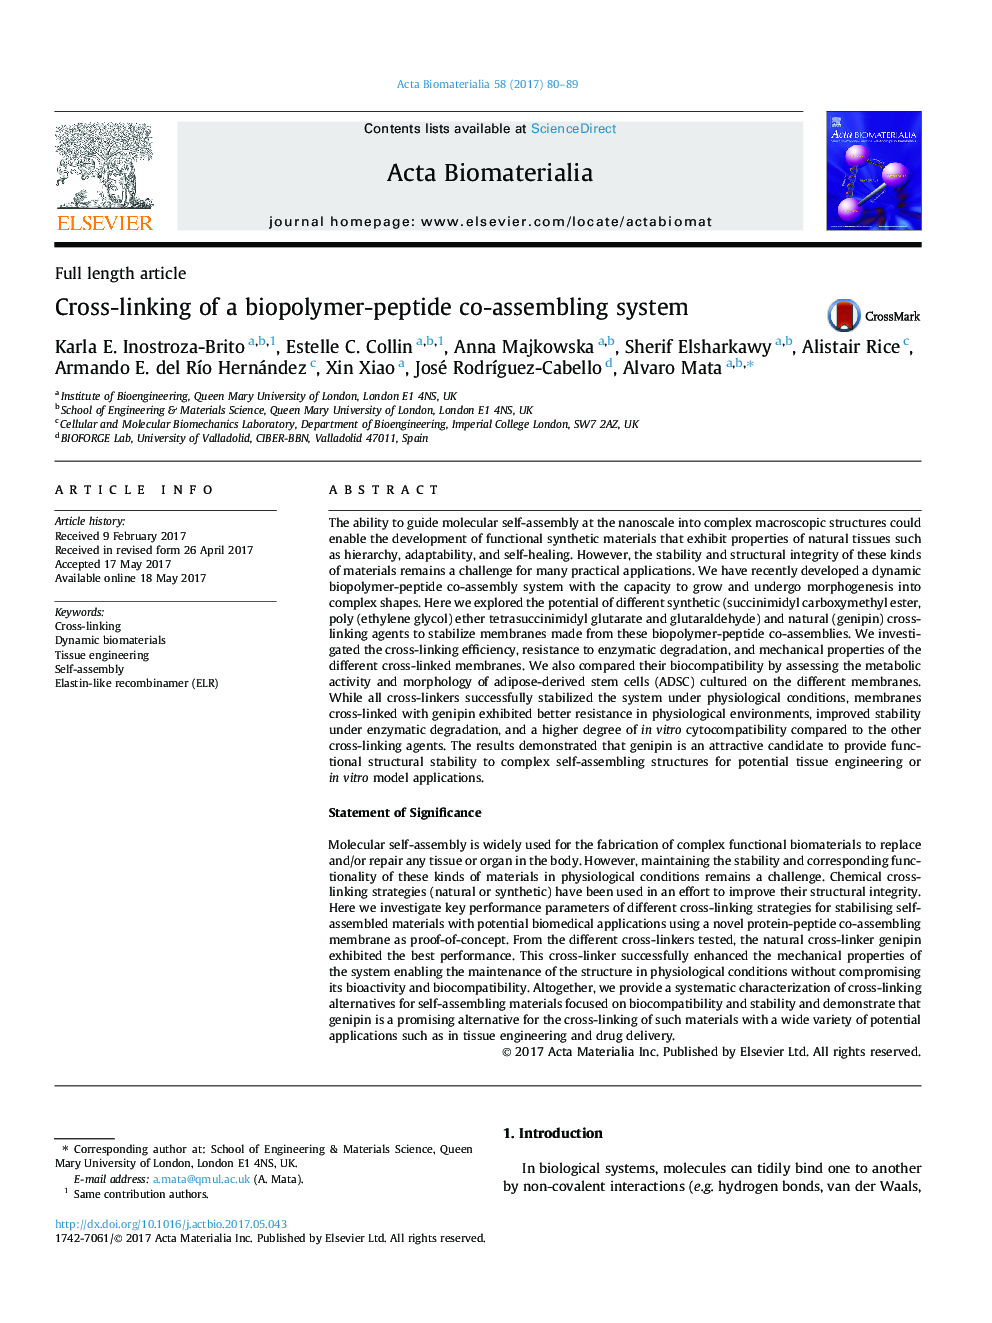 مقاله کامل مقاله اتصال متقابل یک سیستم همپوشانی با پلیمر-پپتید بیوپلیمر